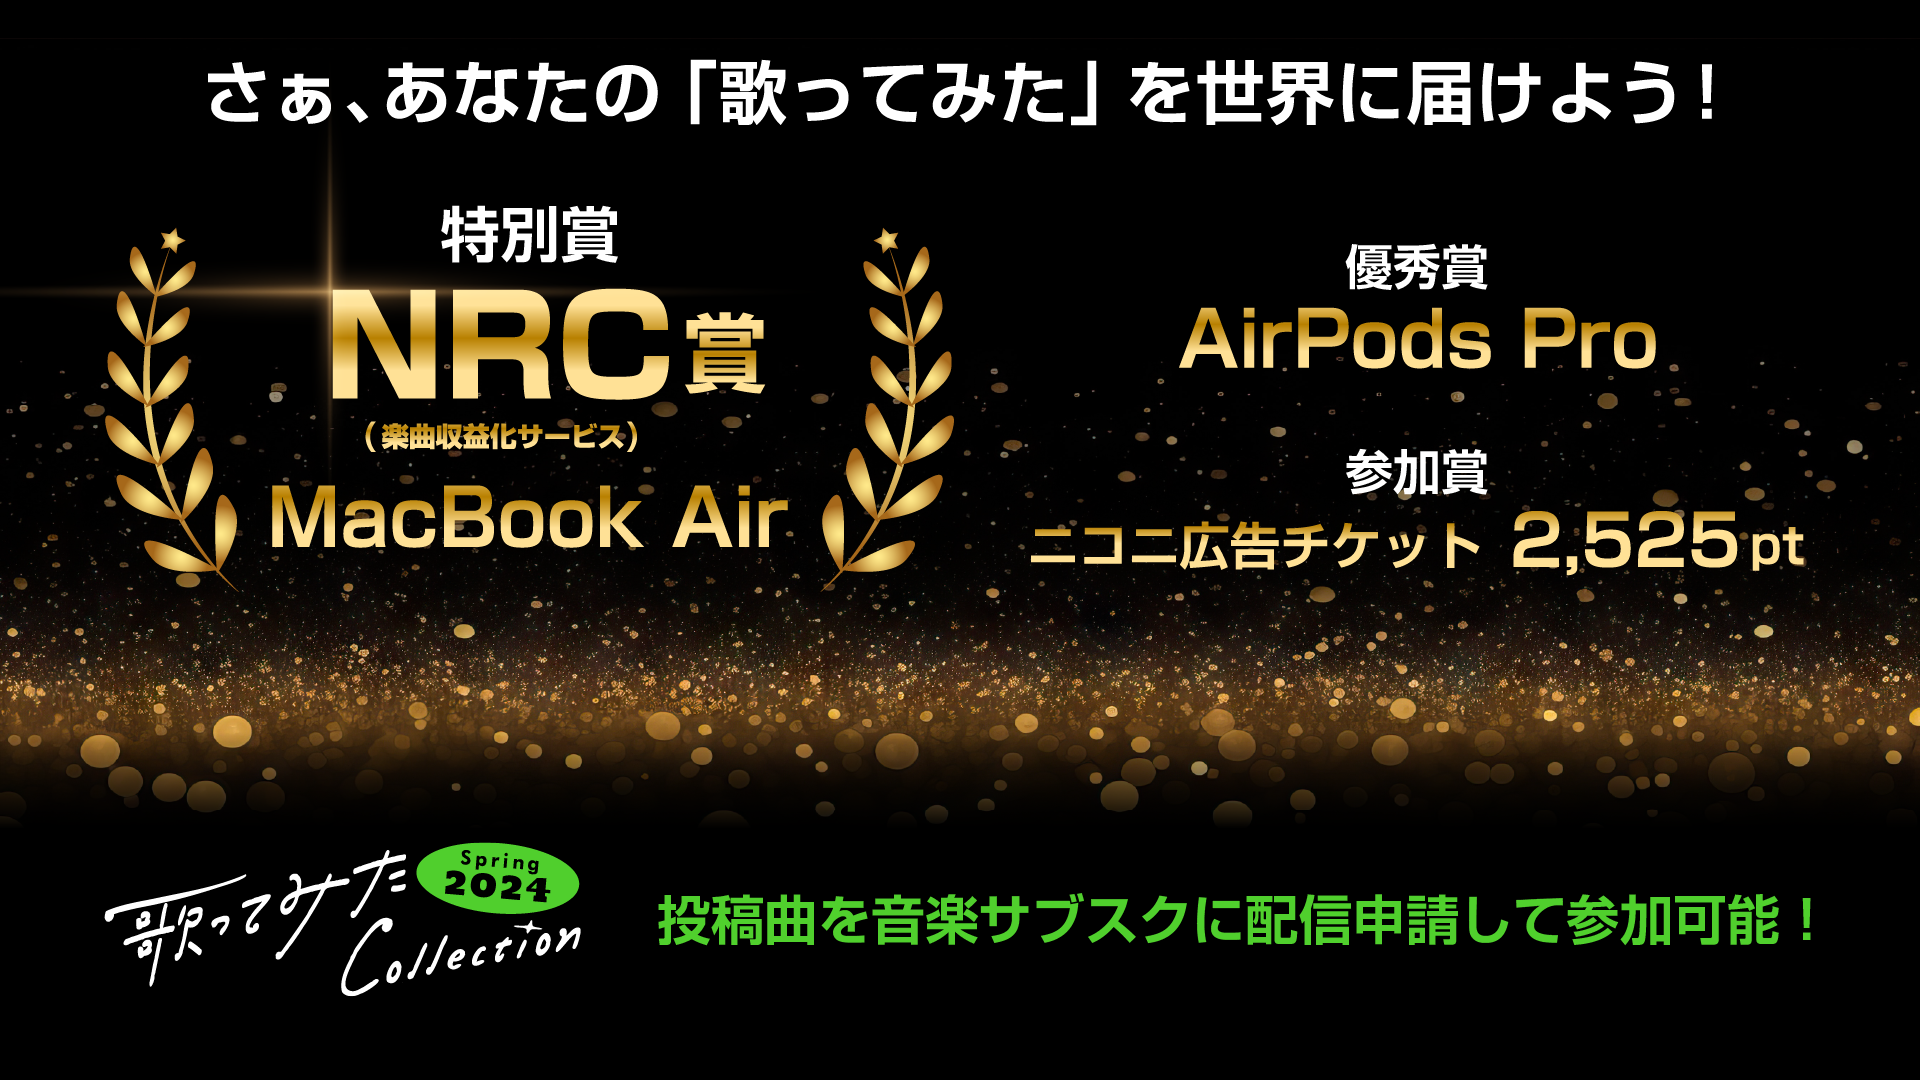 NRC賞バナー_1920_1080